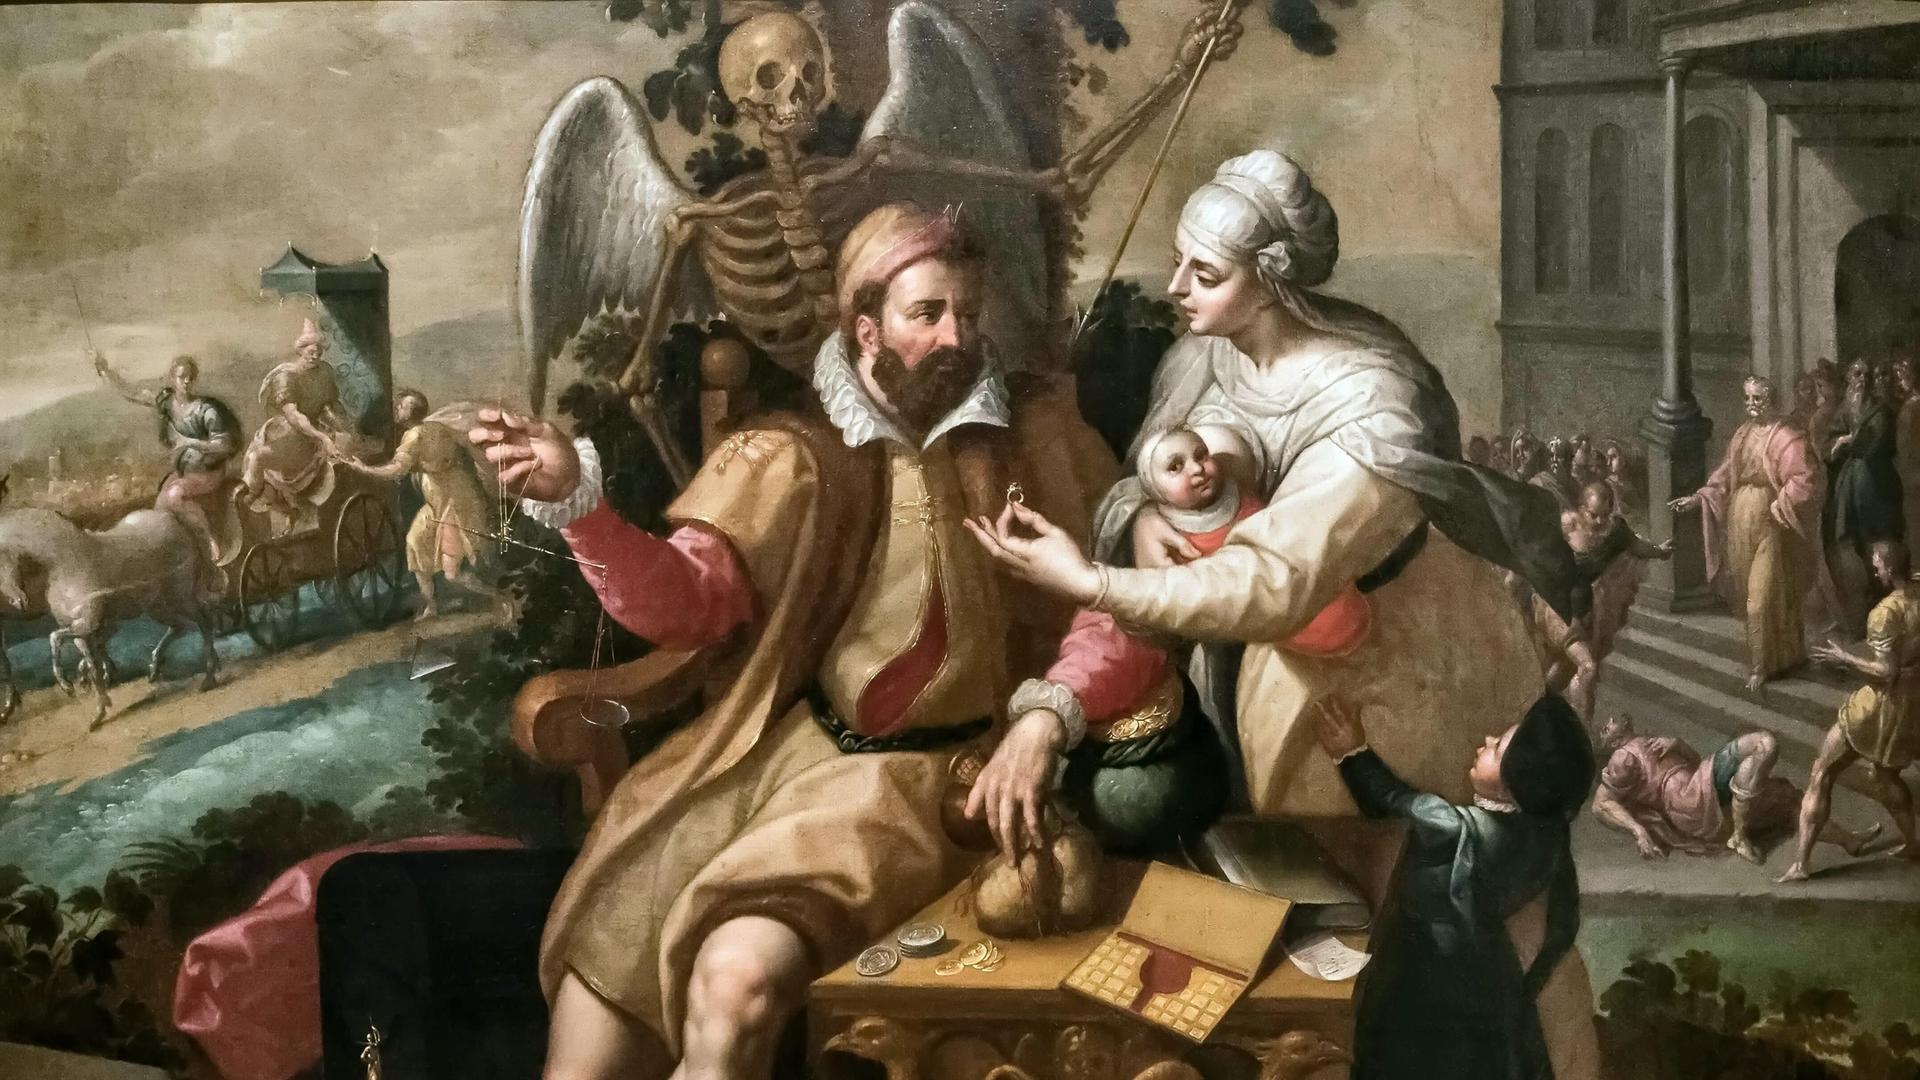 Das Gemälde "Die sieben Todsünden: Gier" zeigt einen prächtig gekleideten Kaufmann, dem eine junge Frau mit Baby einen wertvollen Ring reicht.